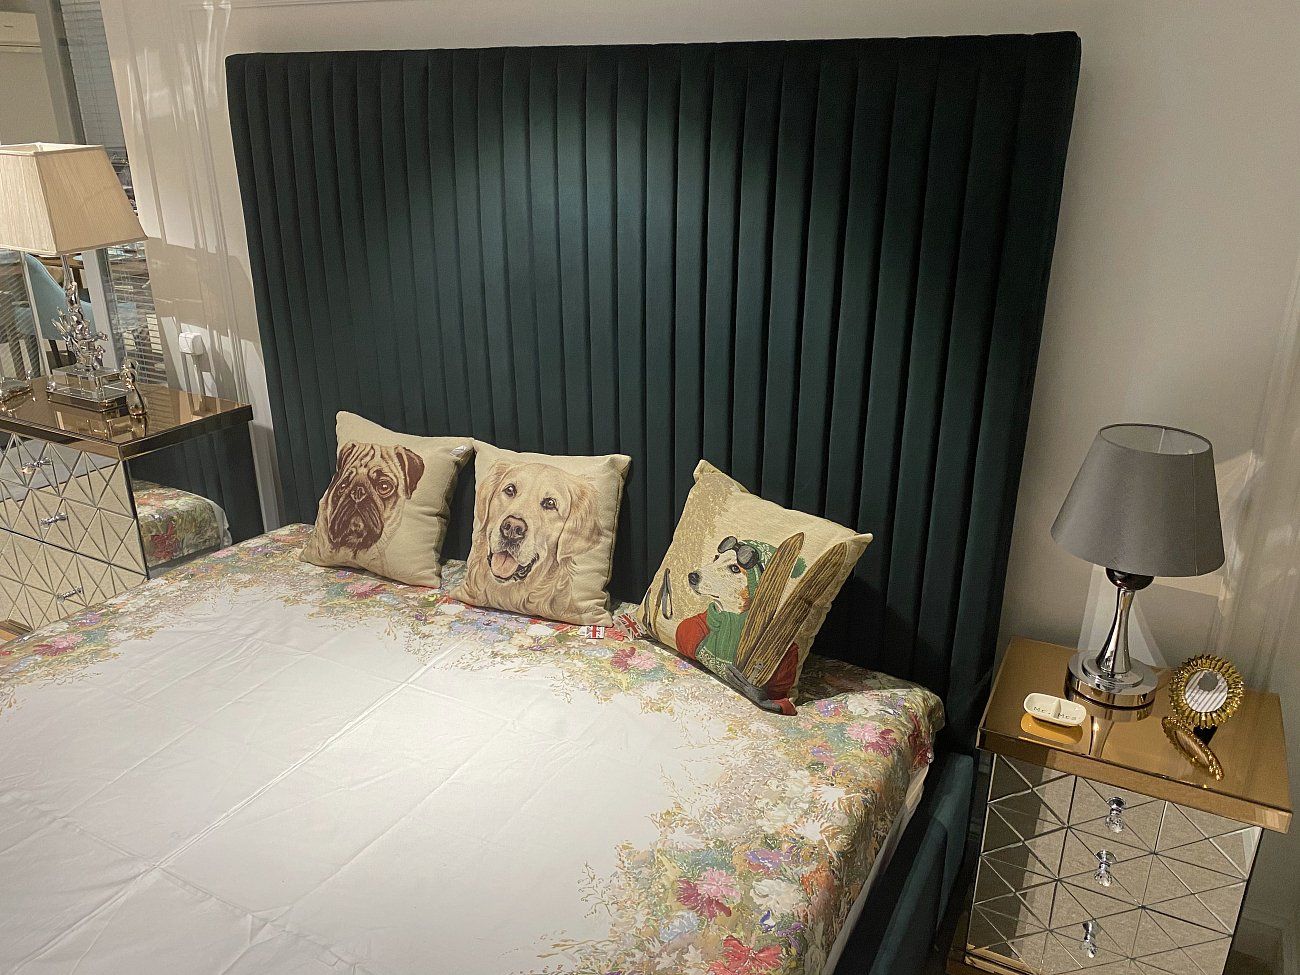 Double bed 180x200 cm gray-beige Mora